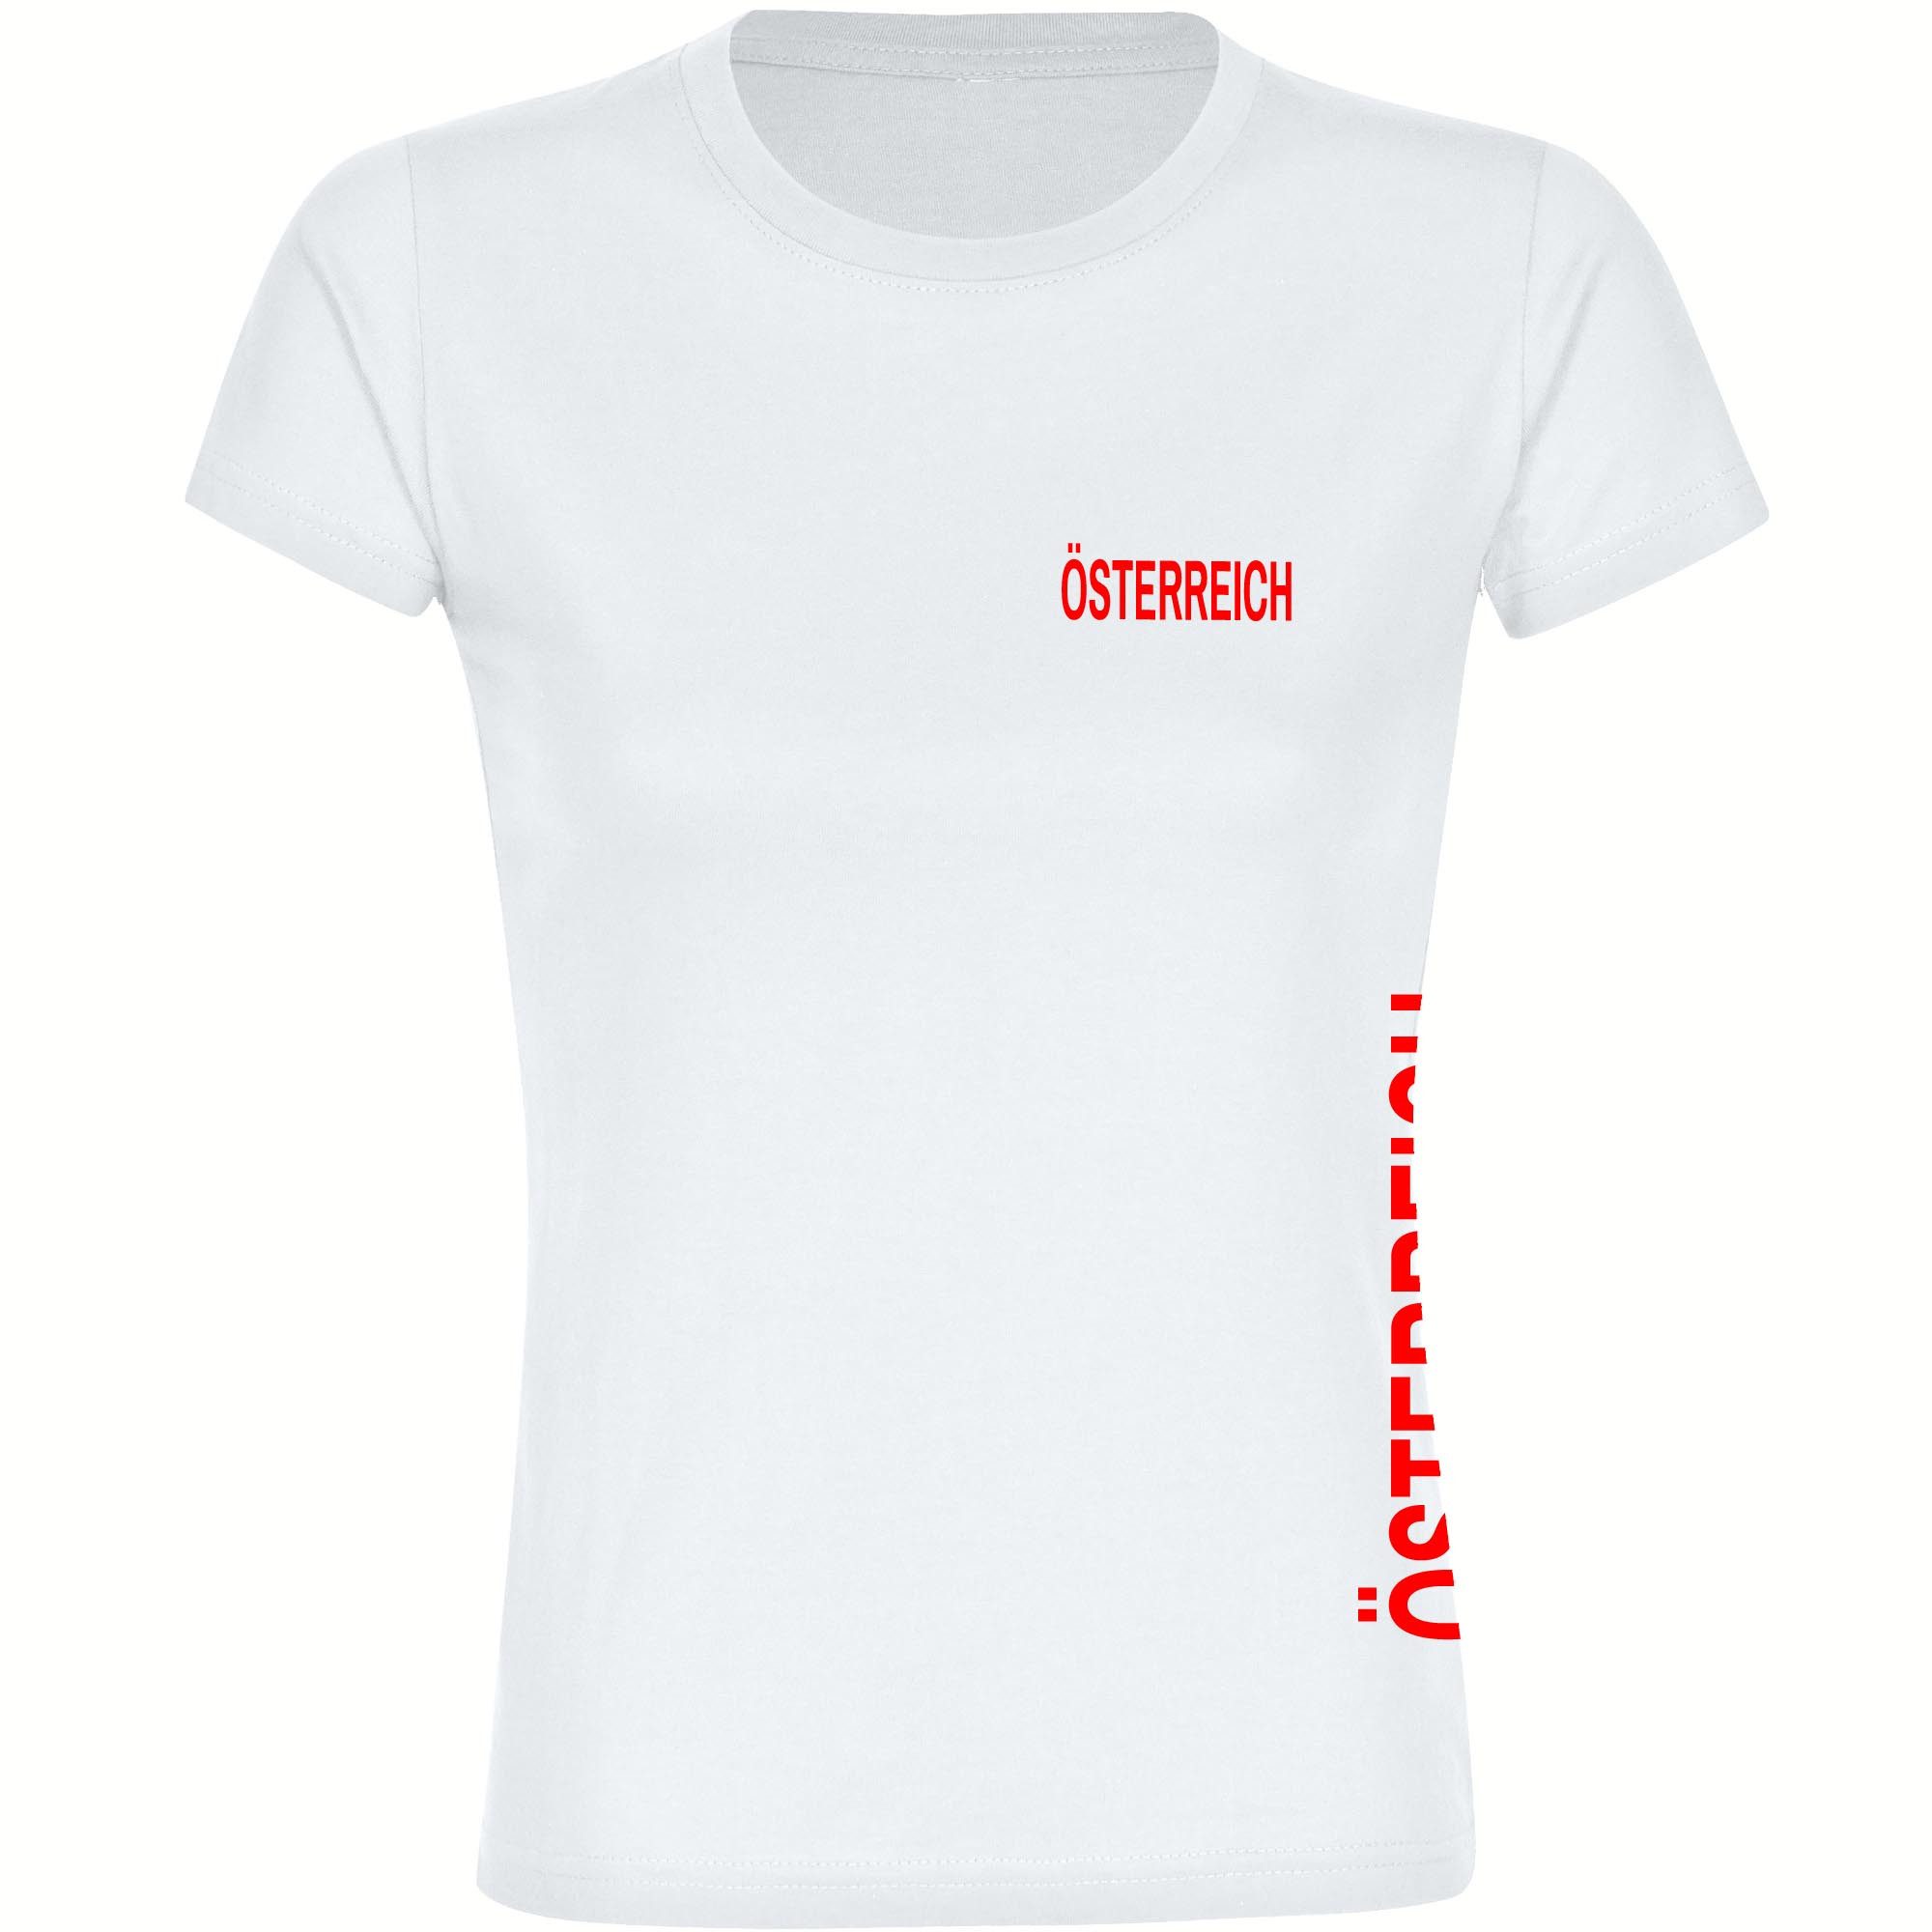 multifanshop T-Shirt Damen Österreich - Brust & Seite - Frauen